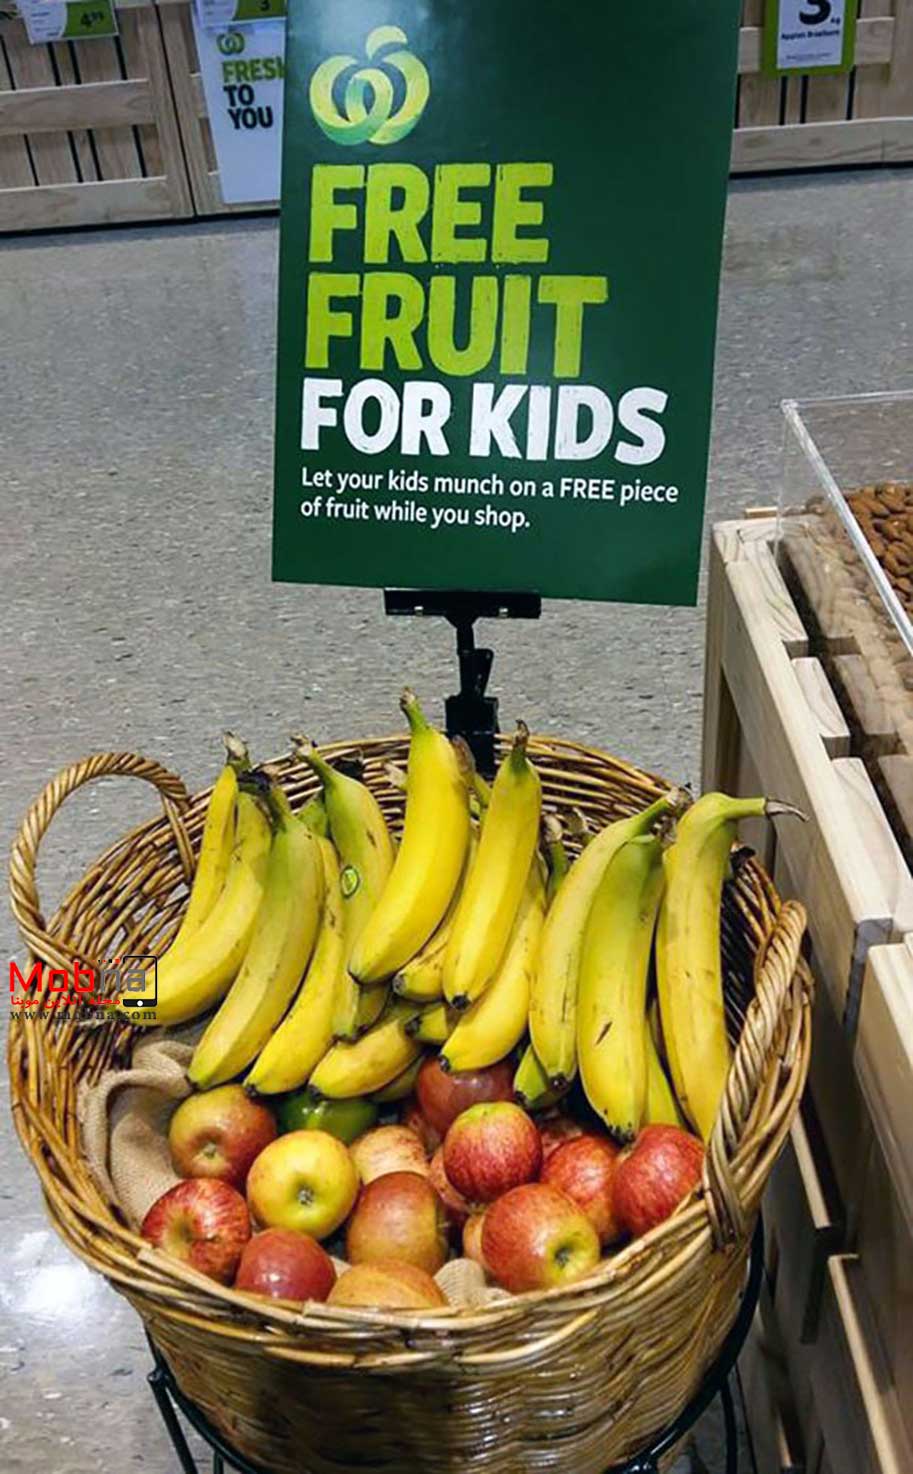 آگهی جالب میوه مجانی برای کودکان! (عکس)